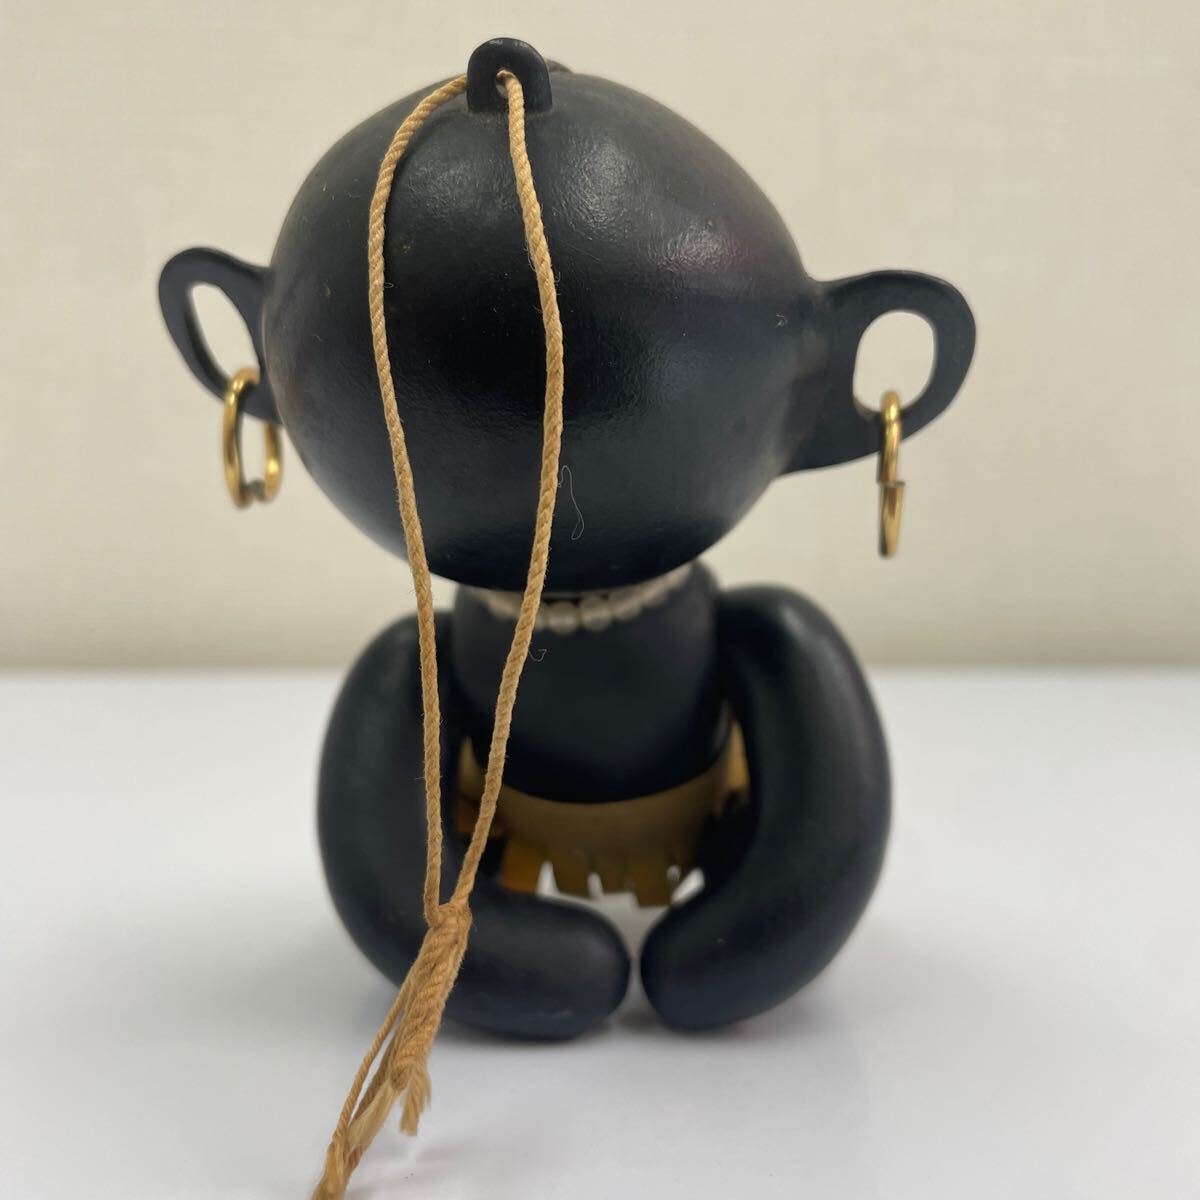 ダッコちゃん 人形 約14cm ソフビ 中島製作所 亀マーク 日本製 レトロ